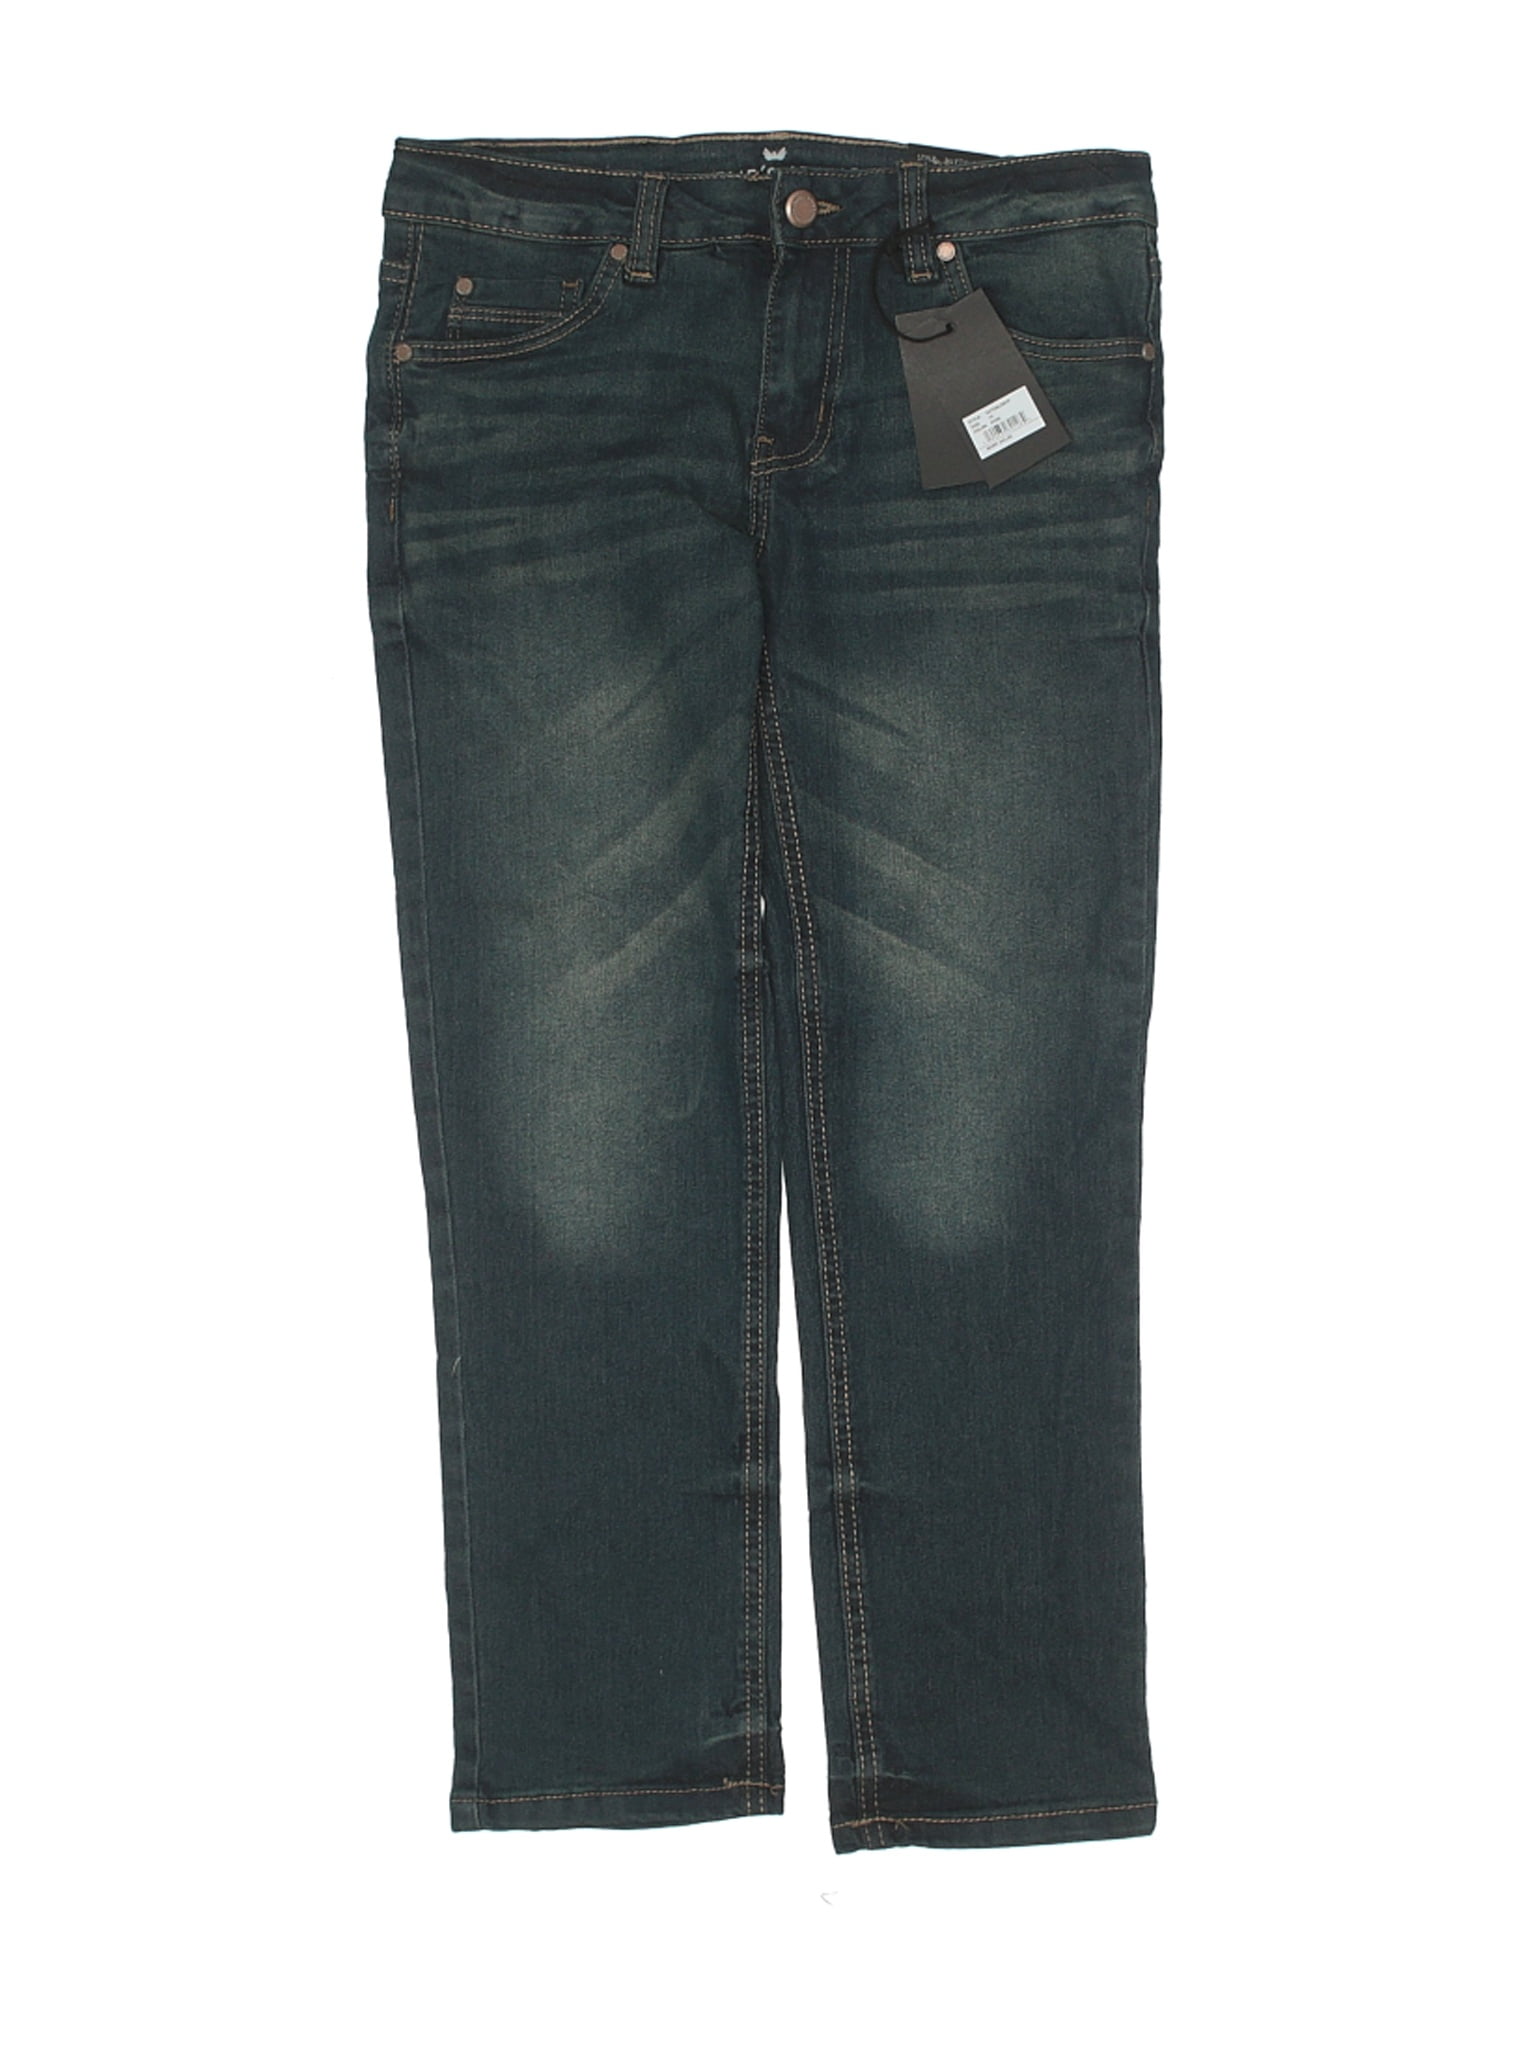 steve's jeans website